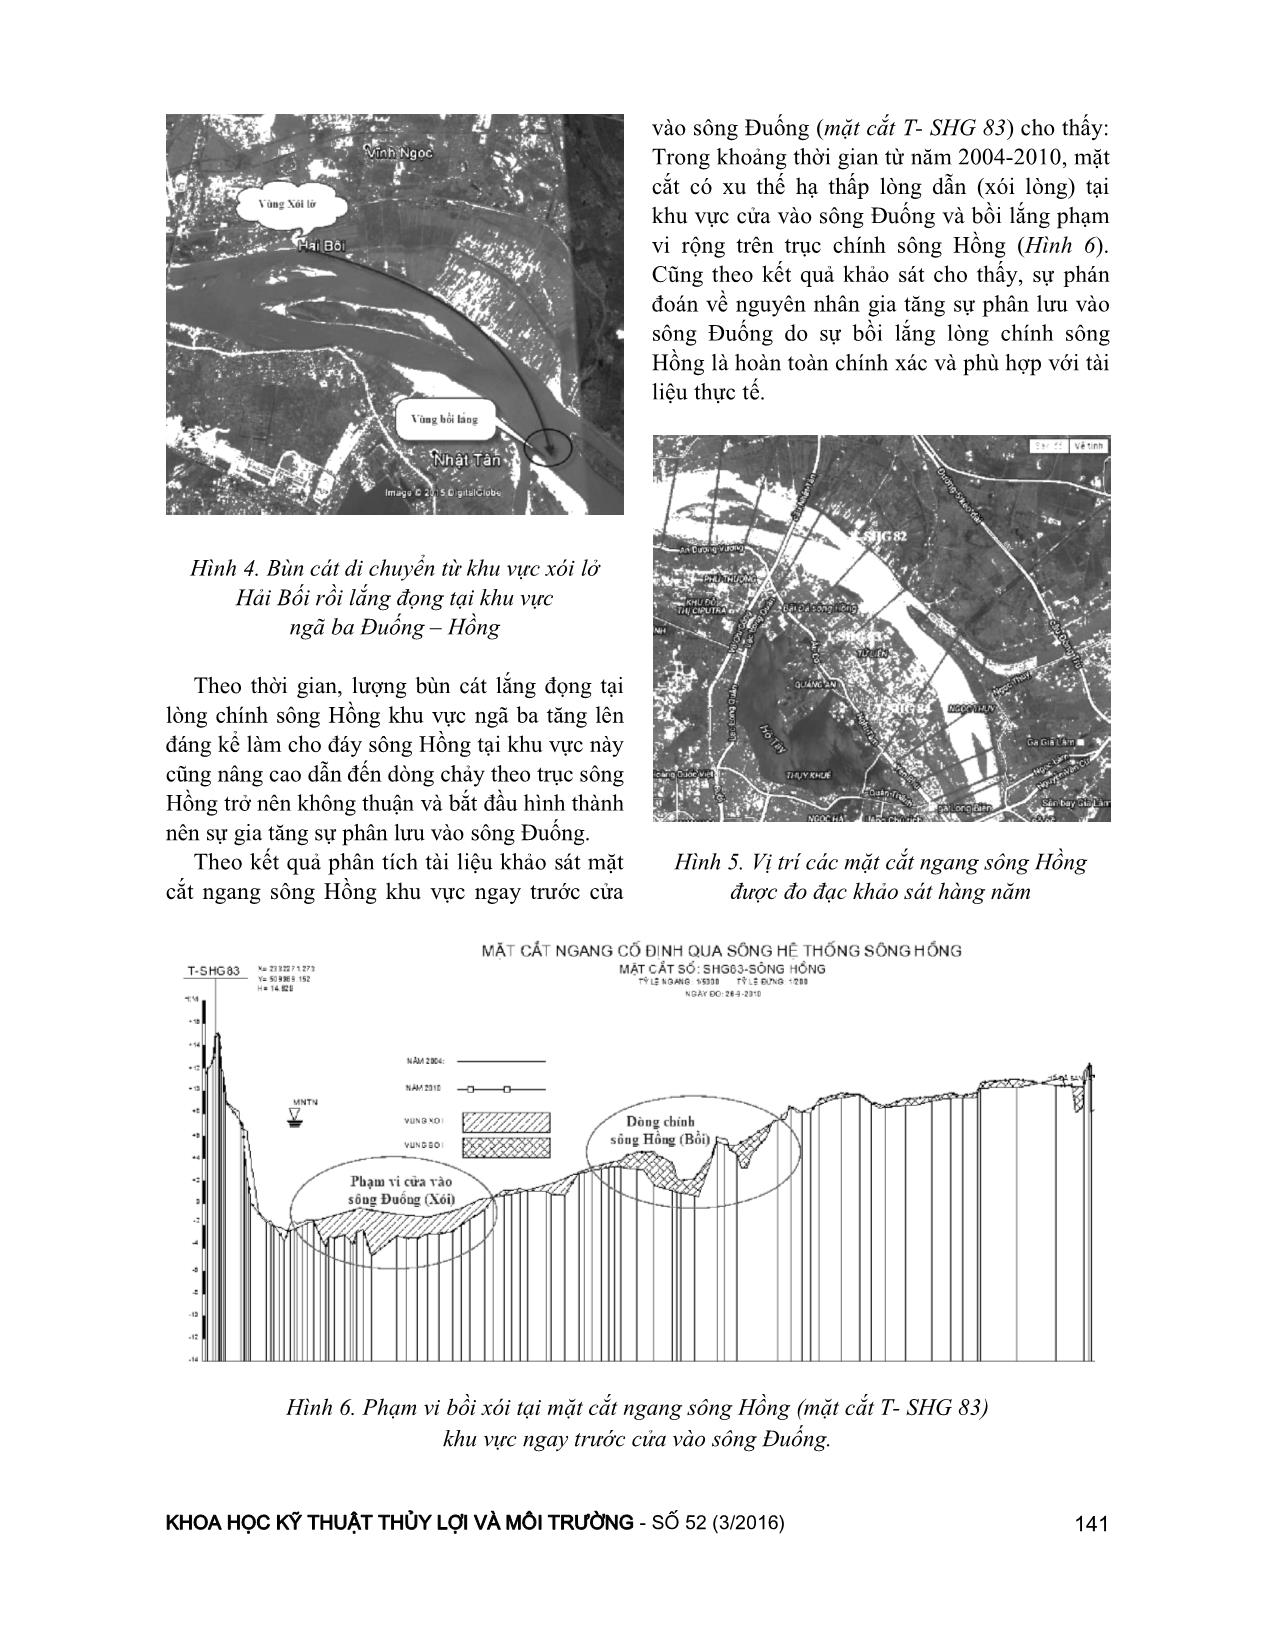 Xác định nguyên nhân làm tăng tỷ lệ phân lưu sang sông đuống và cơ chế gây xói lở đường bờ tại khu vực ngã ba Đuống - Hồng trang 4